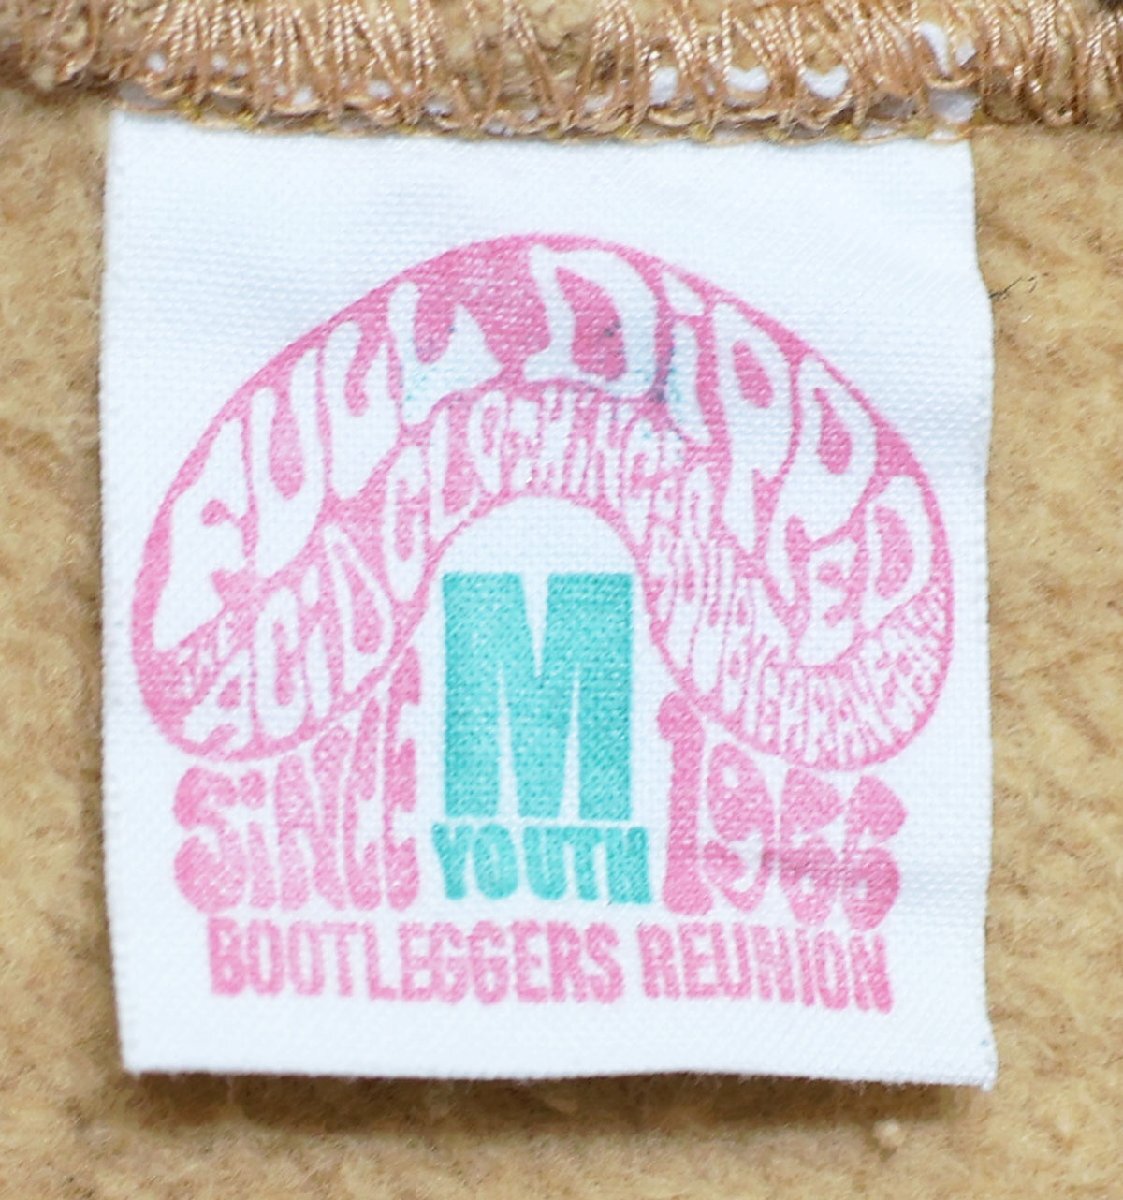 Bootleggers (ブートレガーズ) Pullover Sweat Parka - Grateful Bean / スウェットパーカー 美品 size YOUTH M / フリーホイーラーズ_画像8